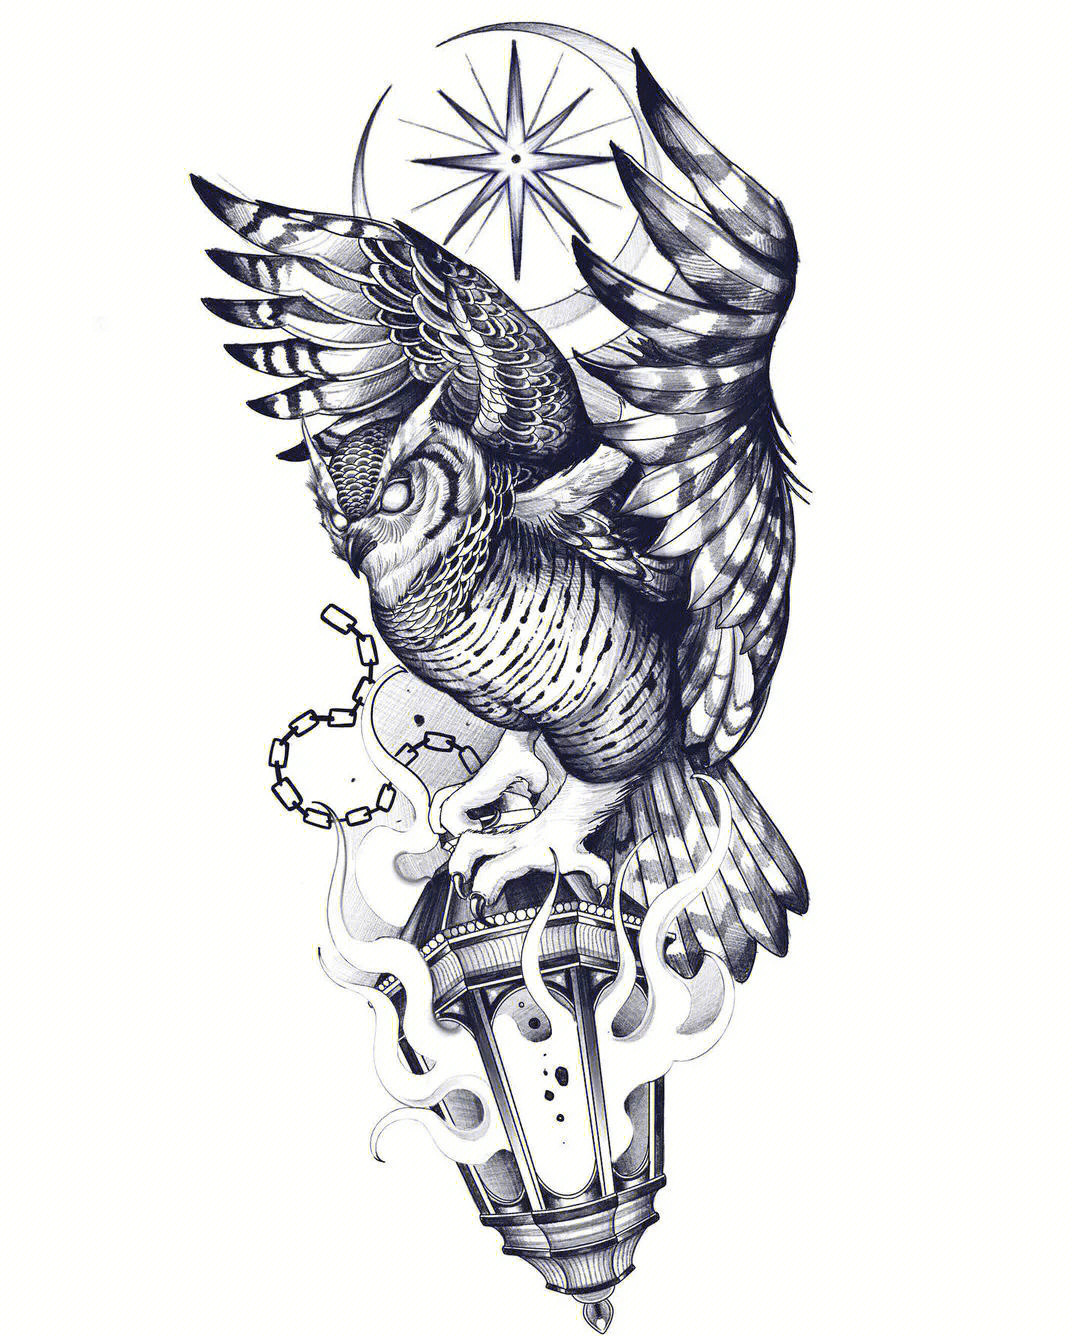 欧美猫头鹰纹身手稿图片